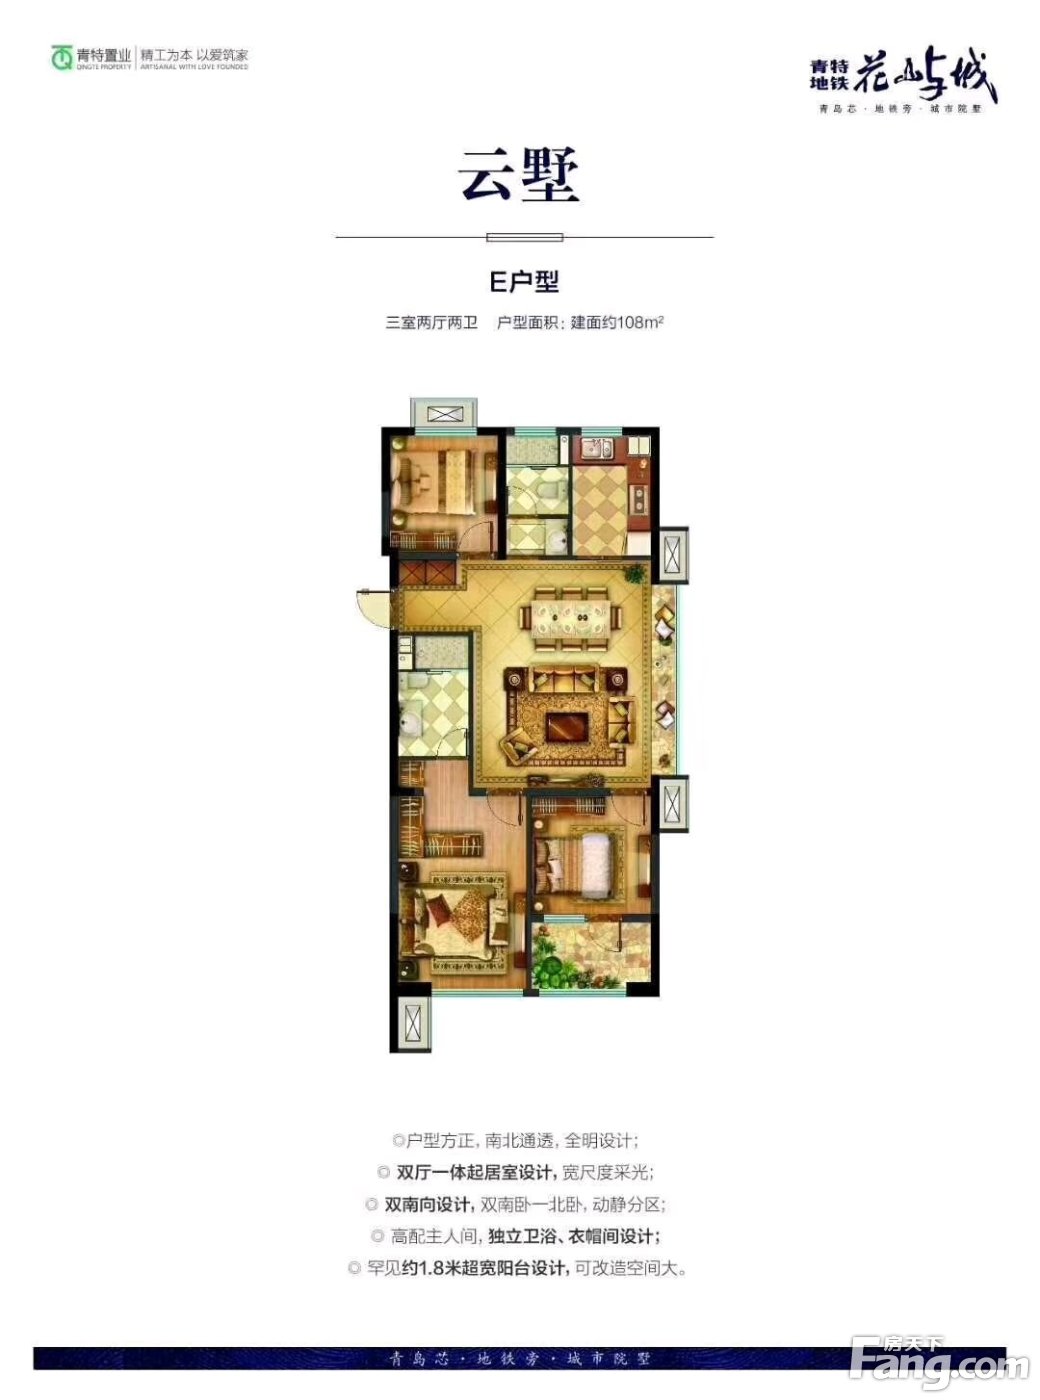 置业顾问亓文峰发布了一条青特地铁·花屿城的抖房